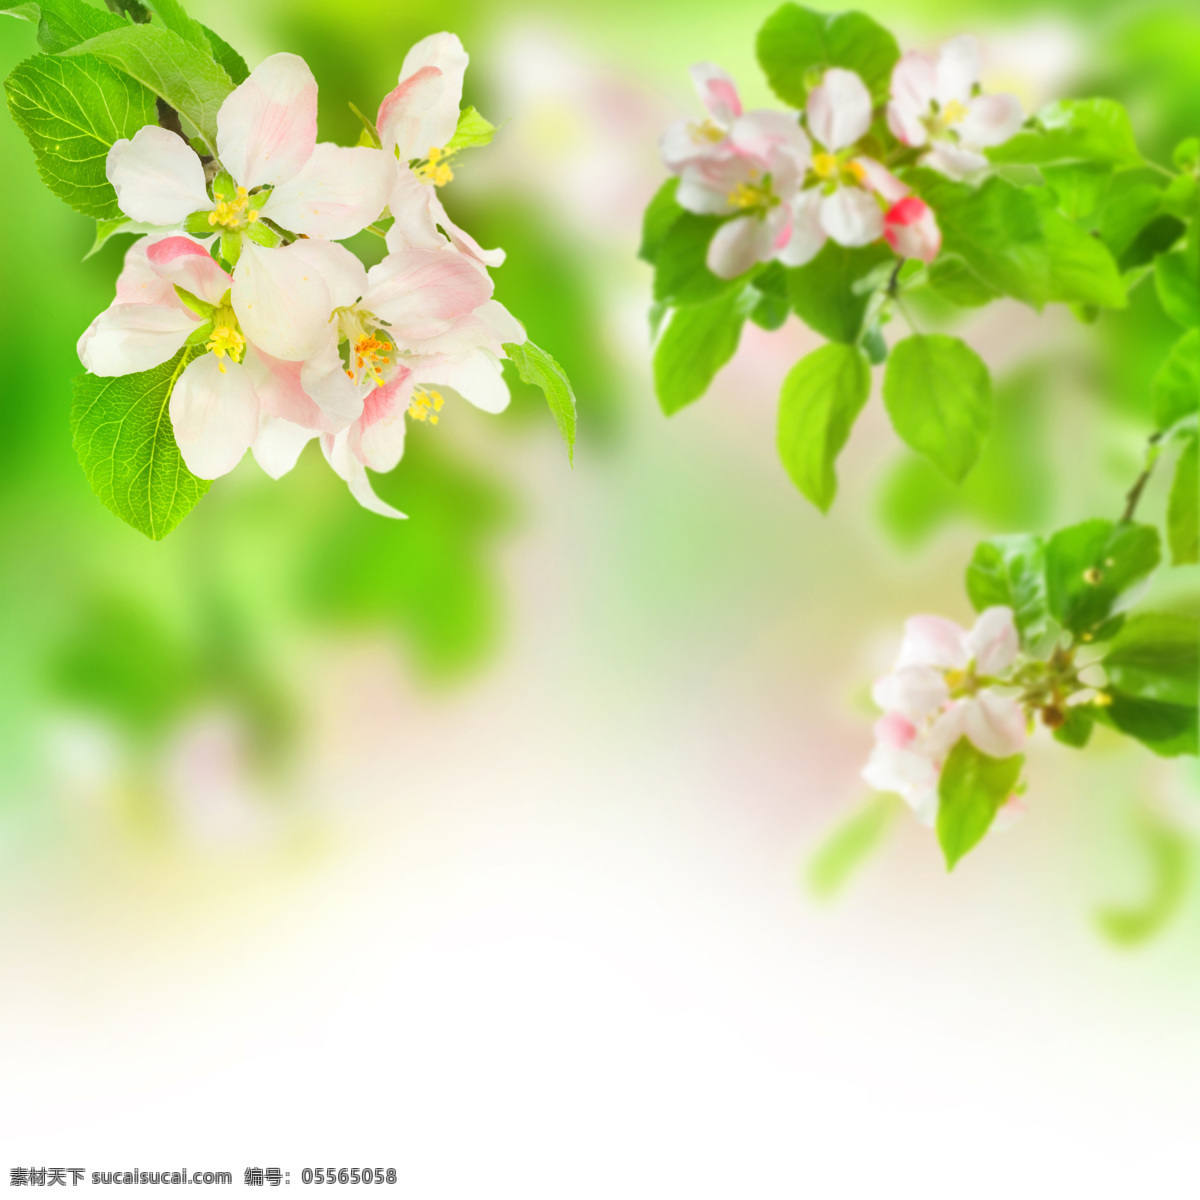 美丽鲜花背景 春天 春季 鲜花背景 花朵 花卉 梦幻背景 绿色清新 花草树木 生物世界 白色